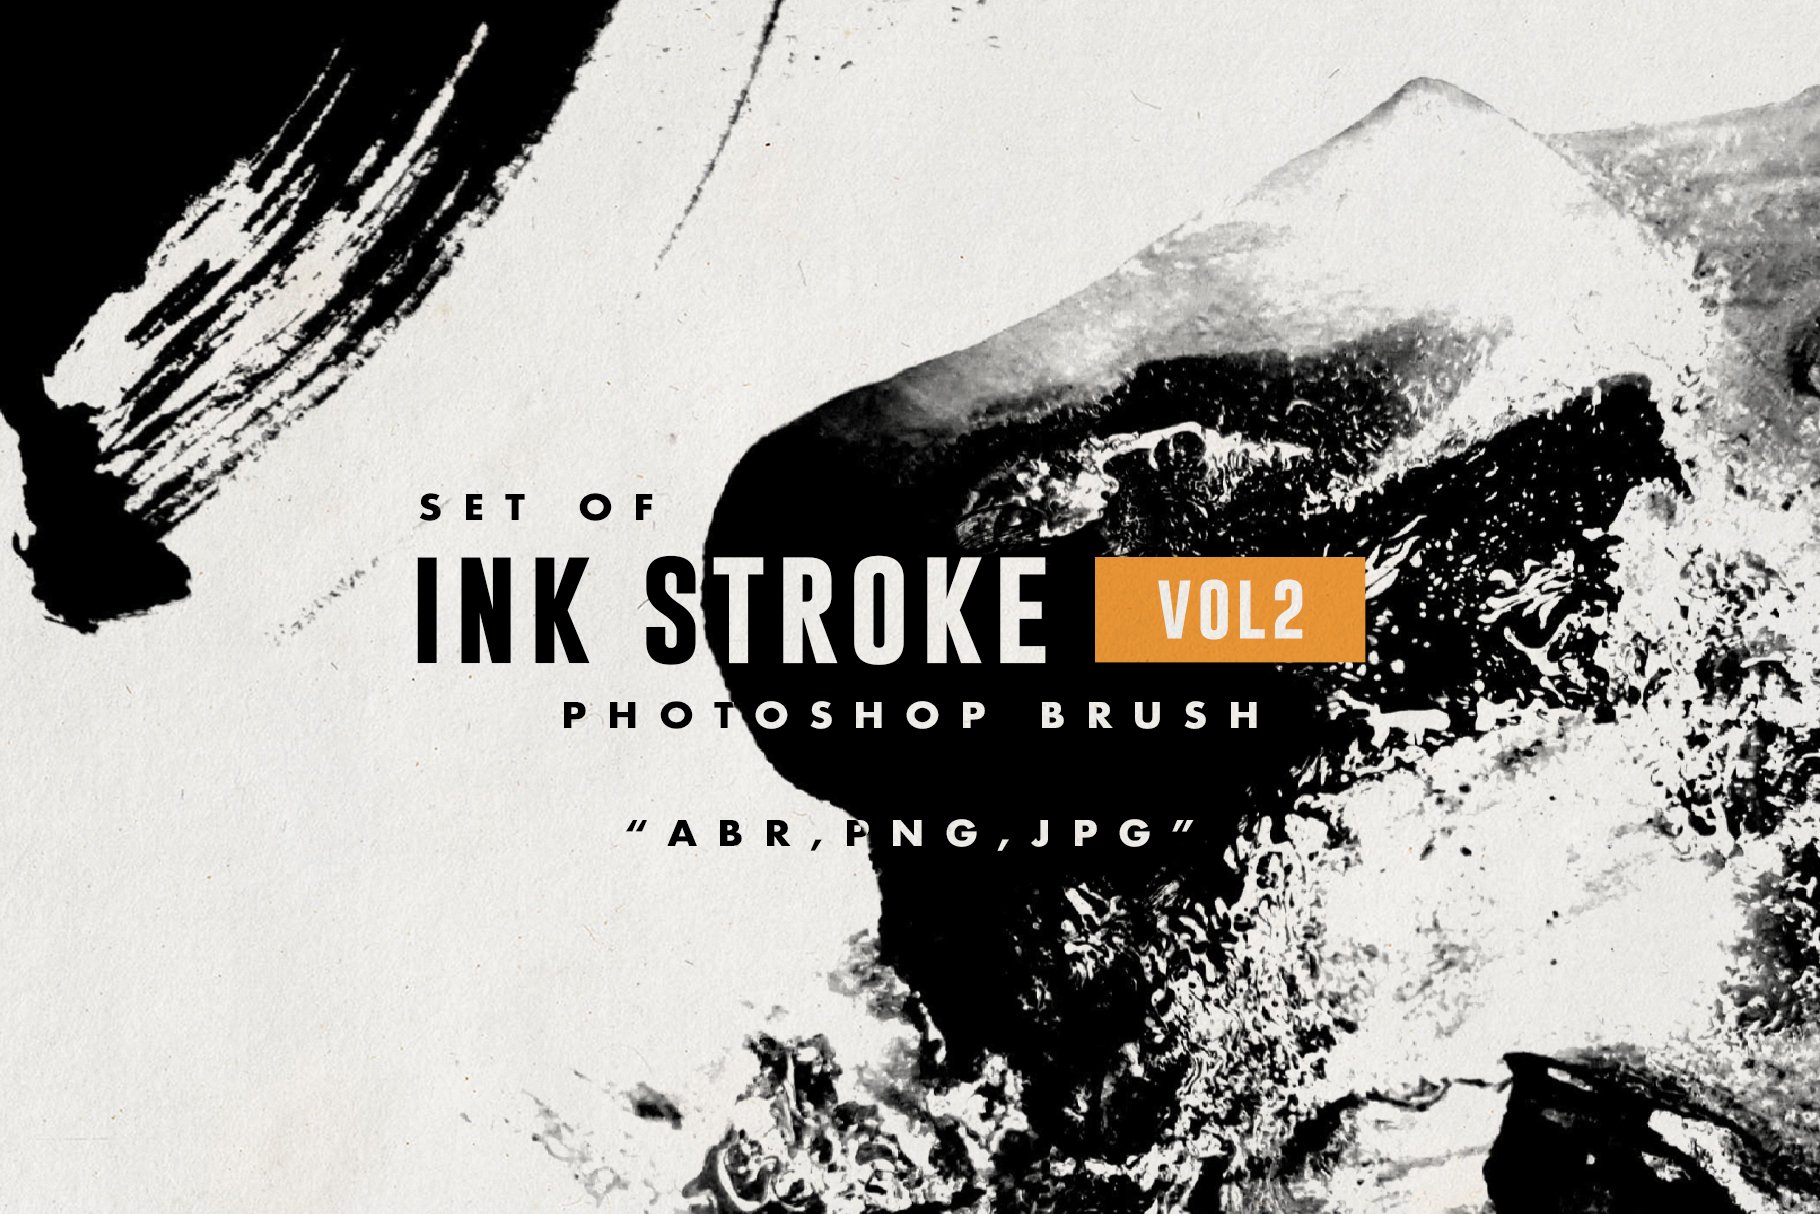 Set of Ink Stroke 2 Brushcover image.